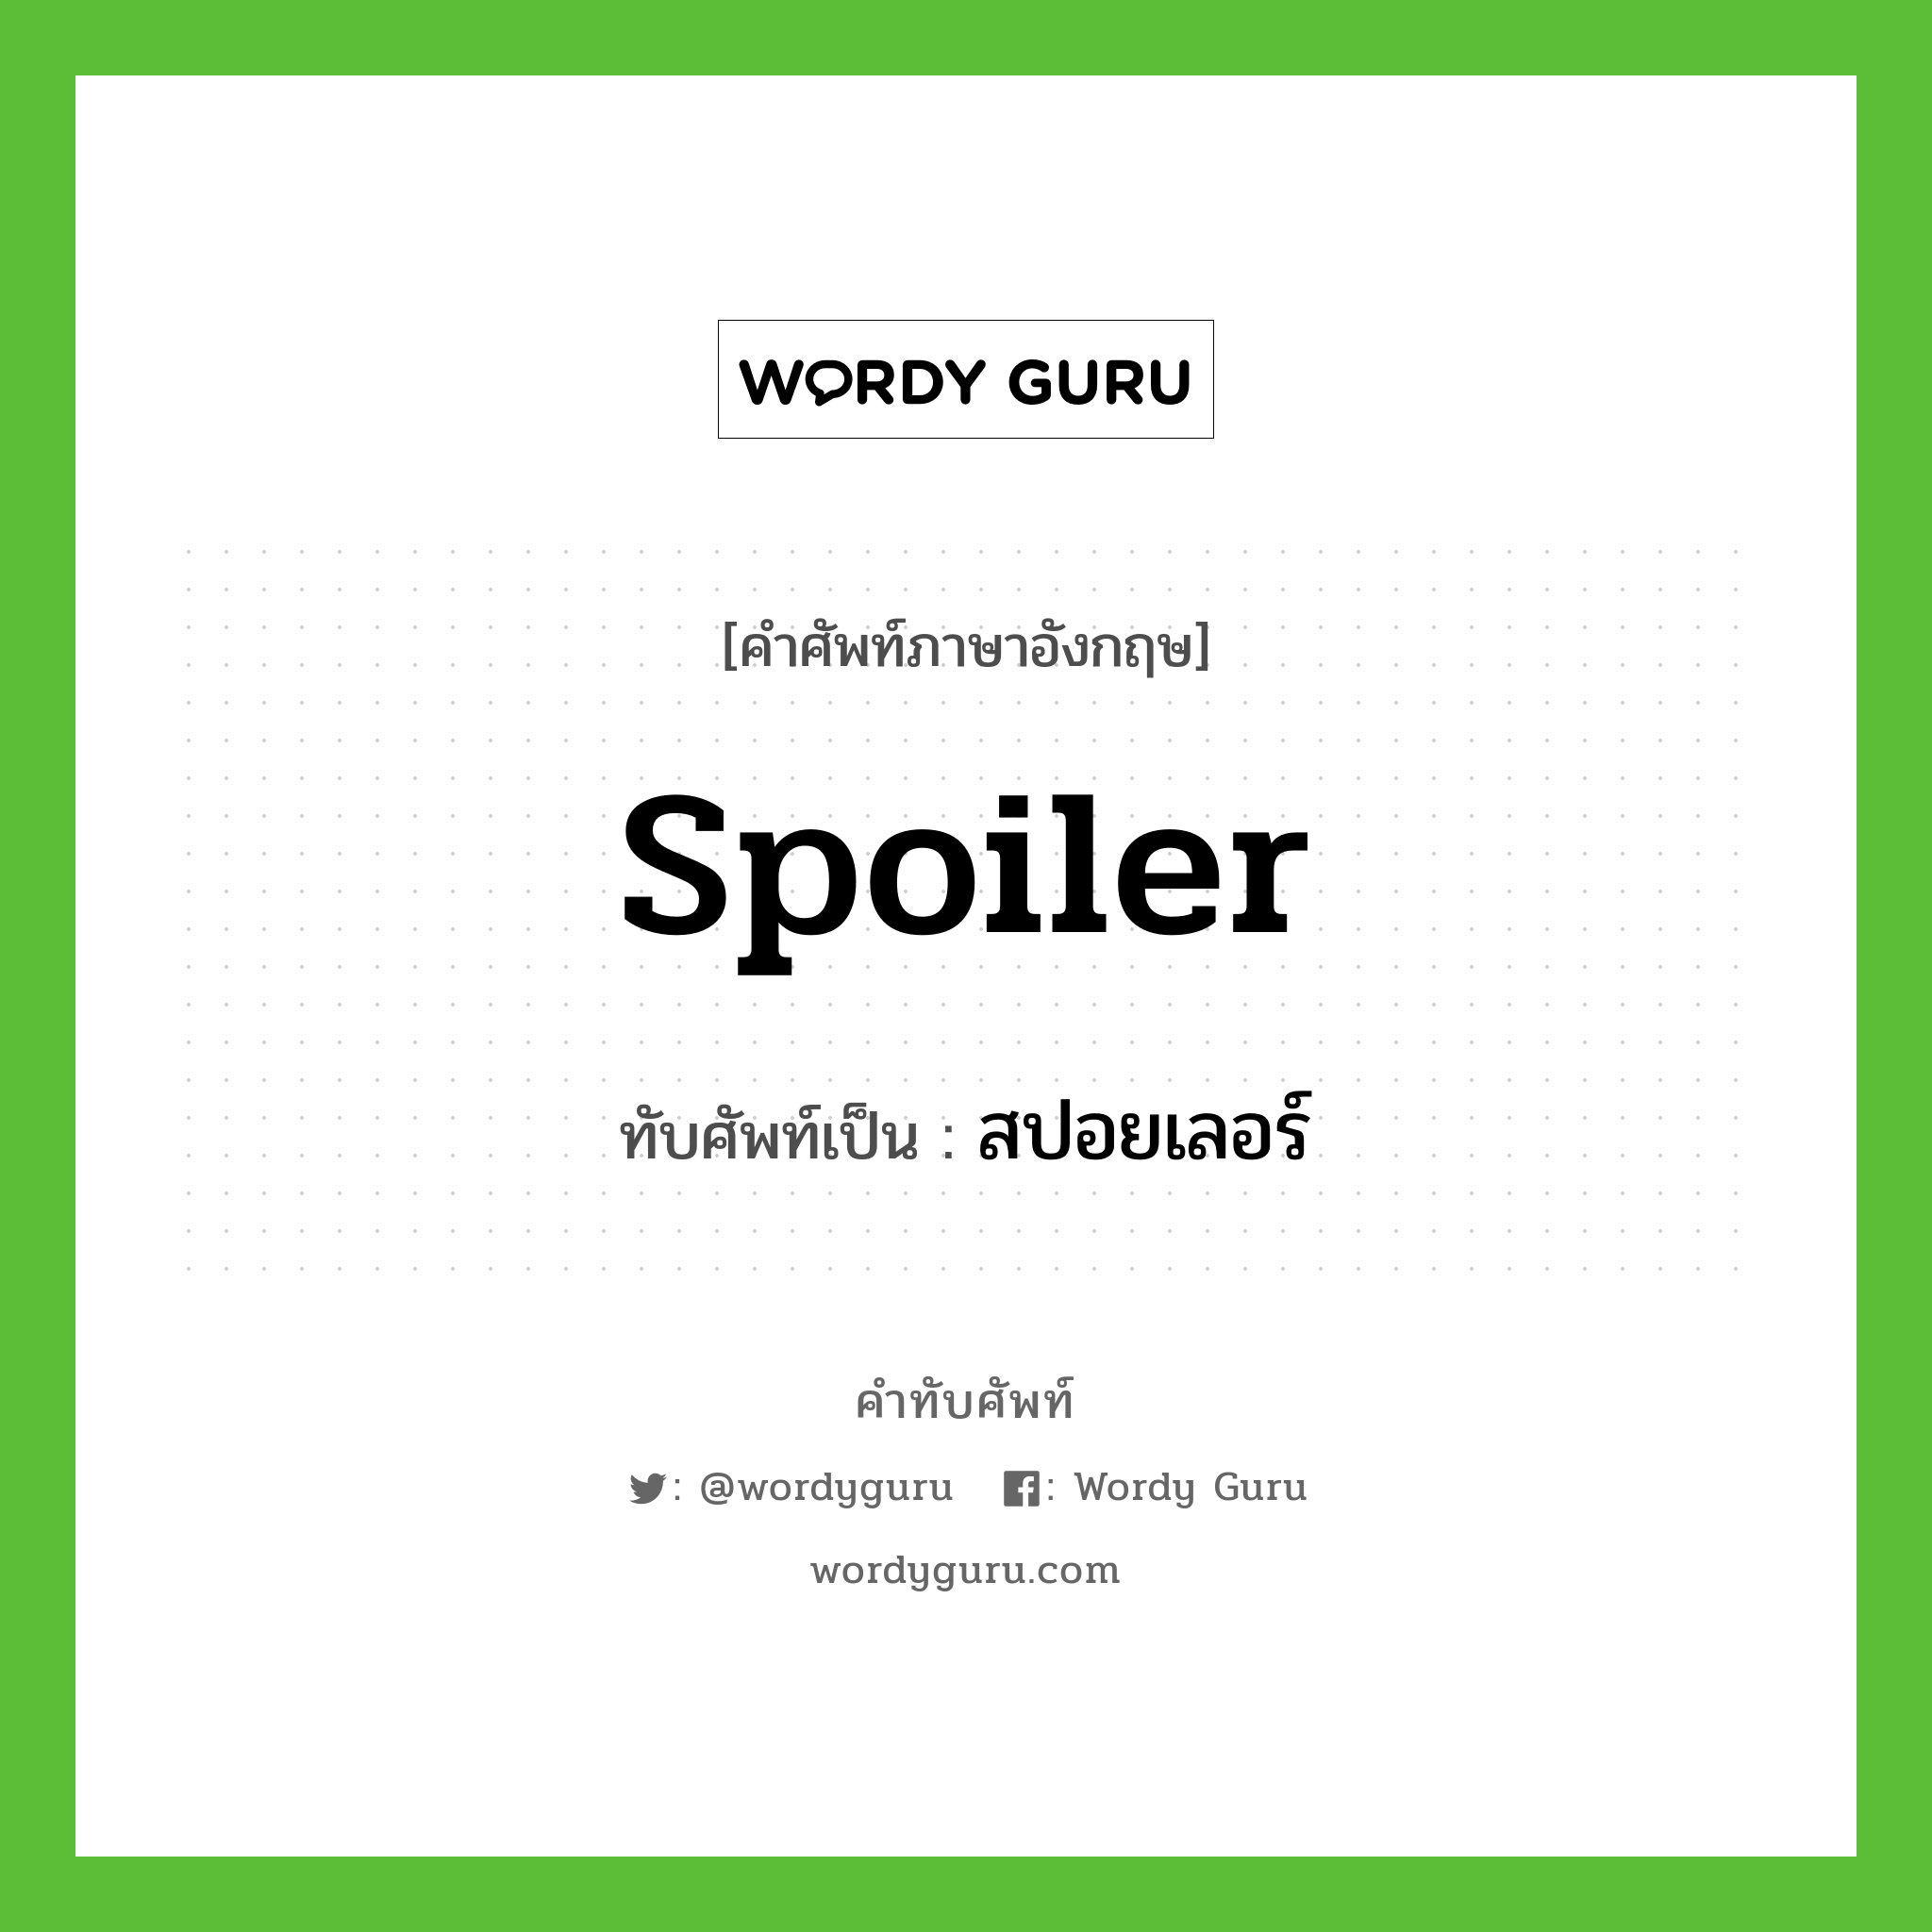 spoiler เขียนเป็นคำไทยว่าอะไร?, คำศัพท์ภาษาอังกฤษ spoiler ทับศัพท์เป็น สปอยเลอร์